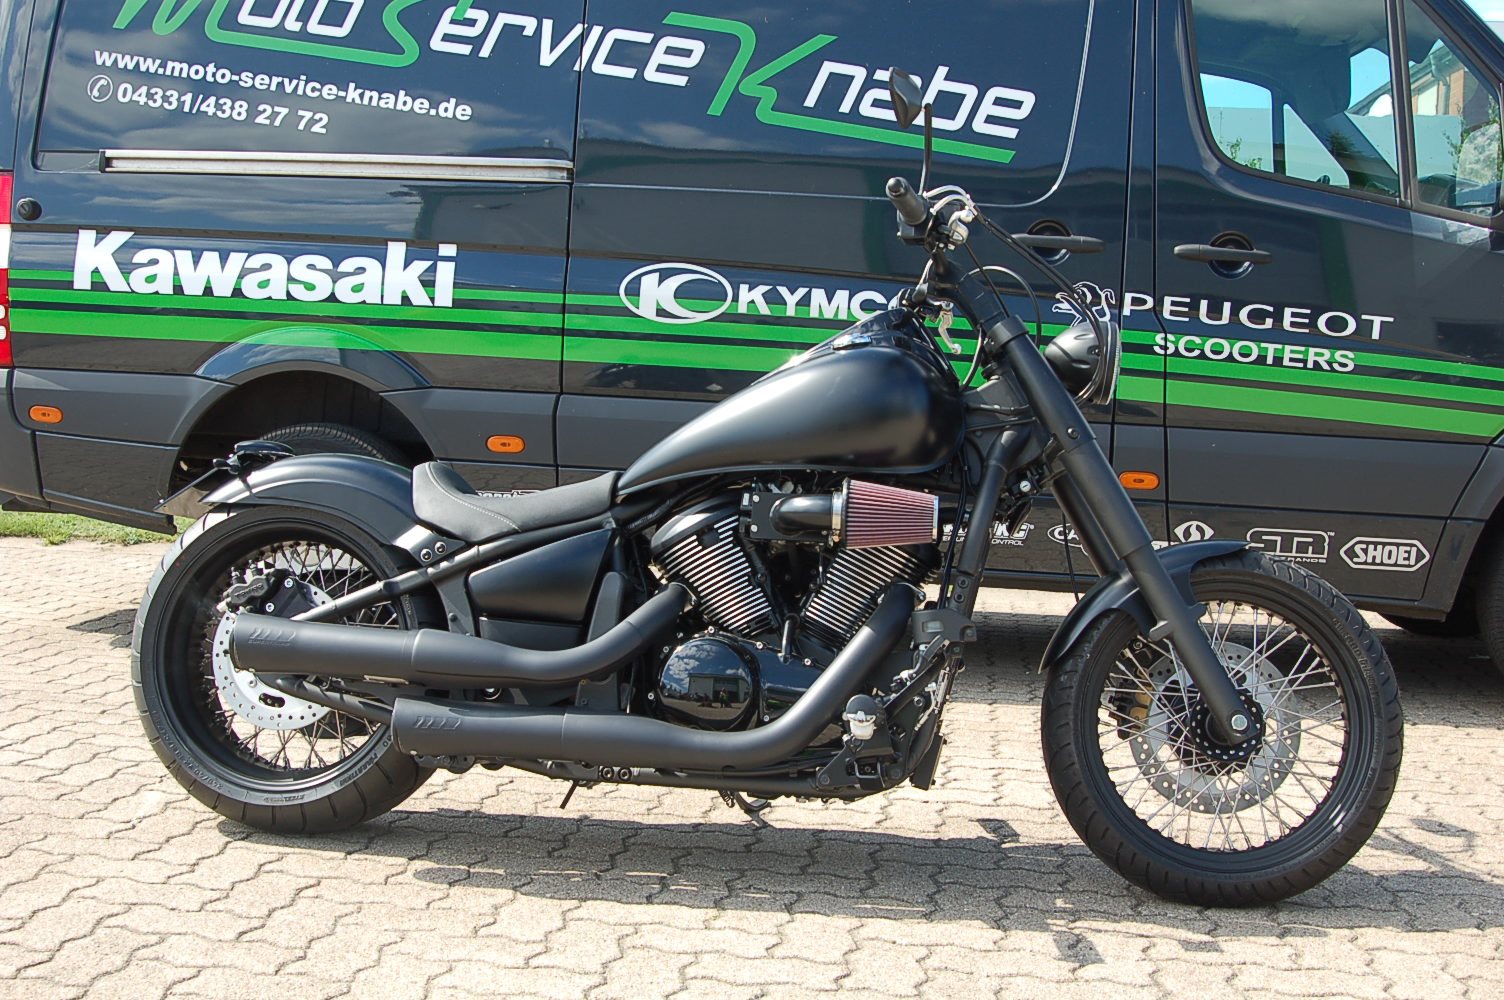 Details zum Custom-Bike Kawasaki 900 Custom Händlers Moto Service Knabe